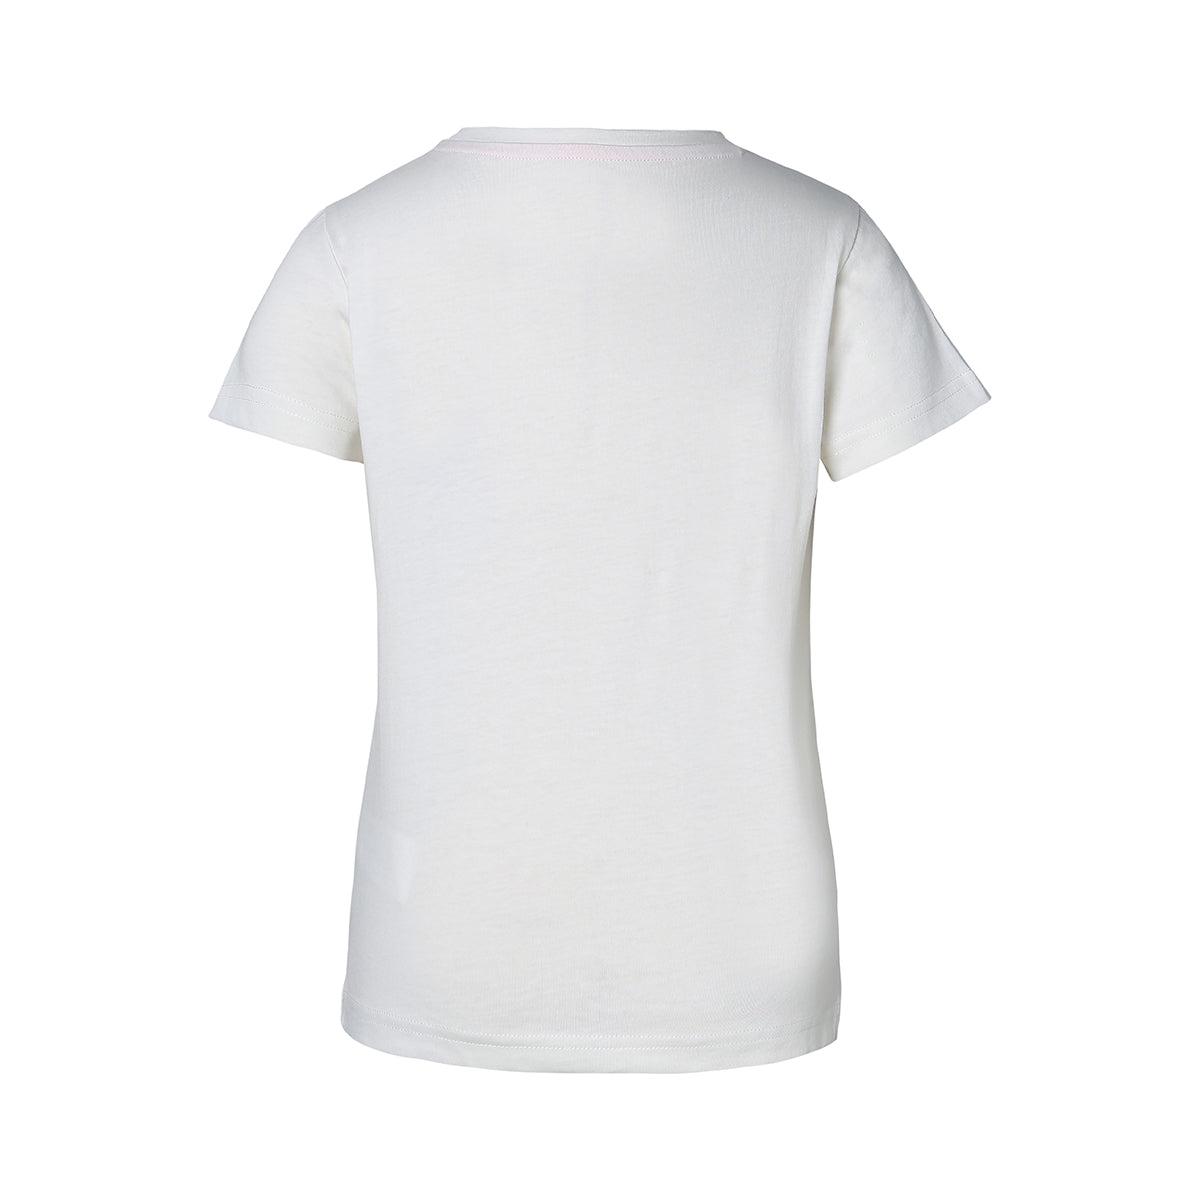 Selected image for KAPPA Majica za devojčice Qualix siva